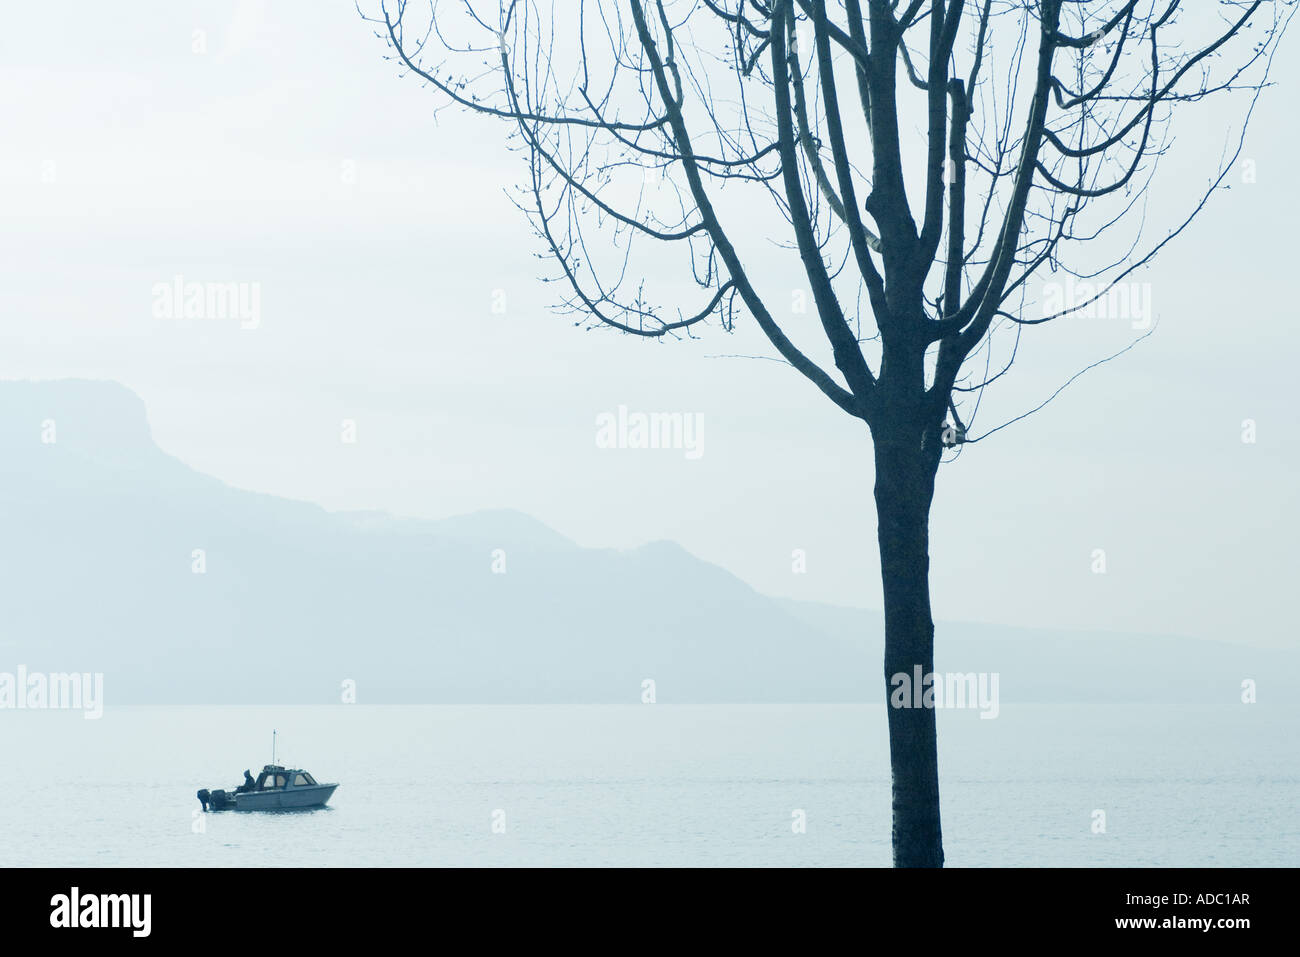 La Suisse, en bateau sur le lac de Genève, l'arbre en premier plan Banque D'Images